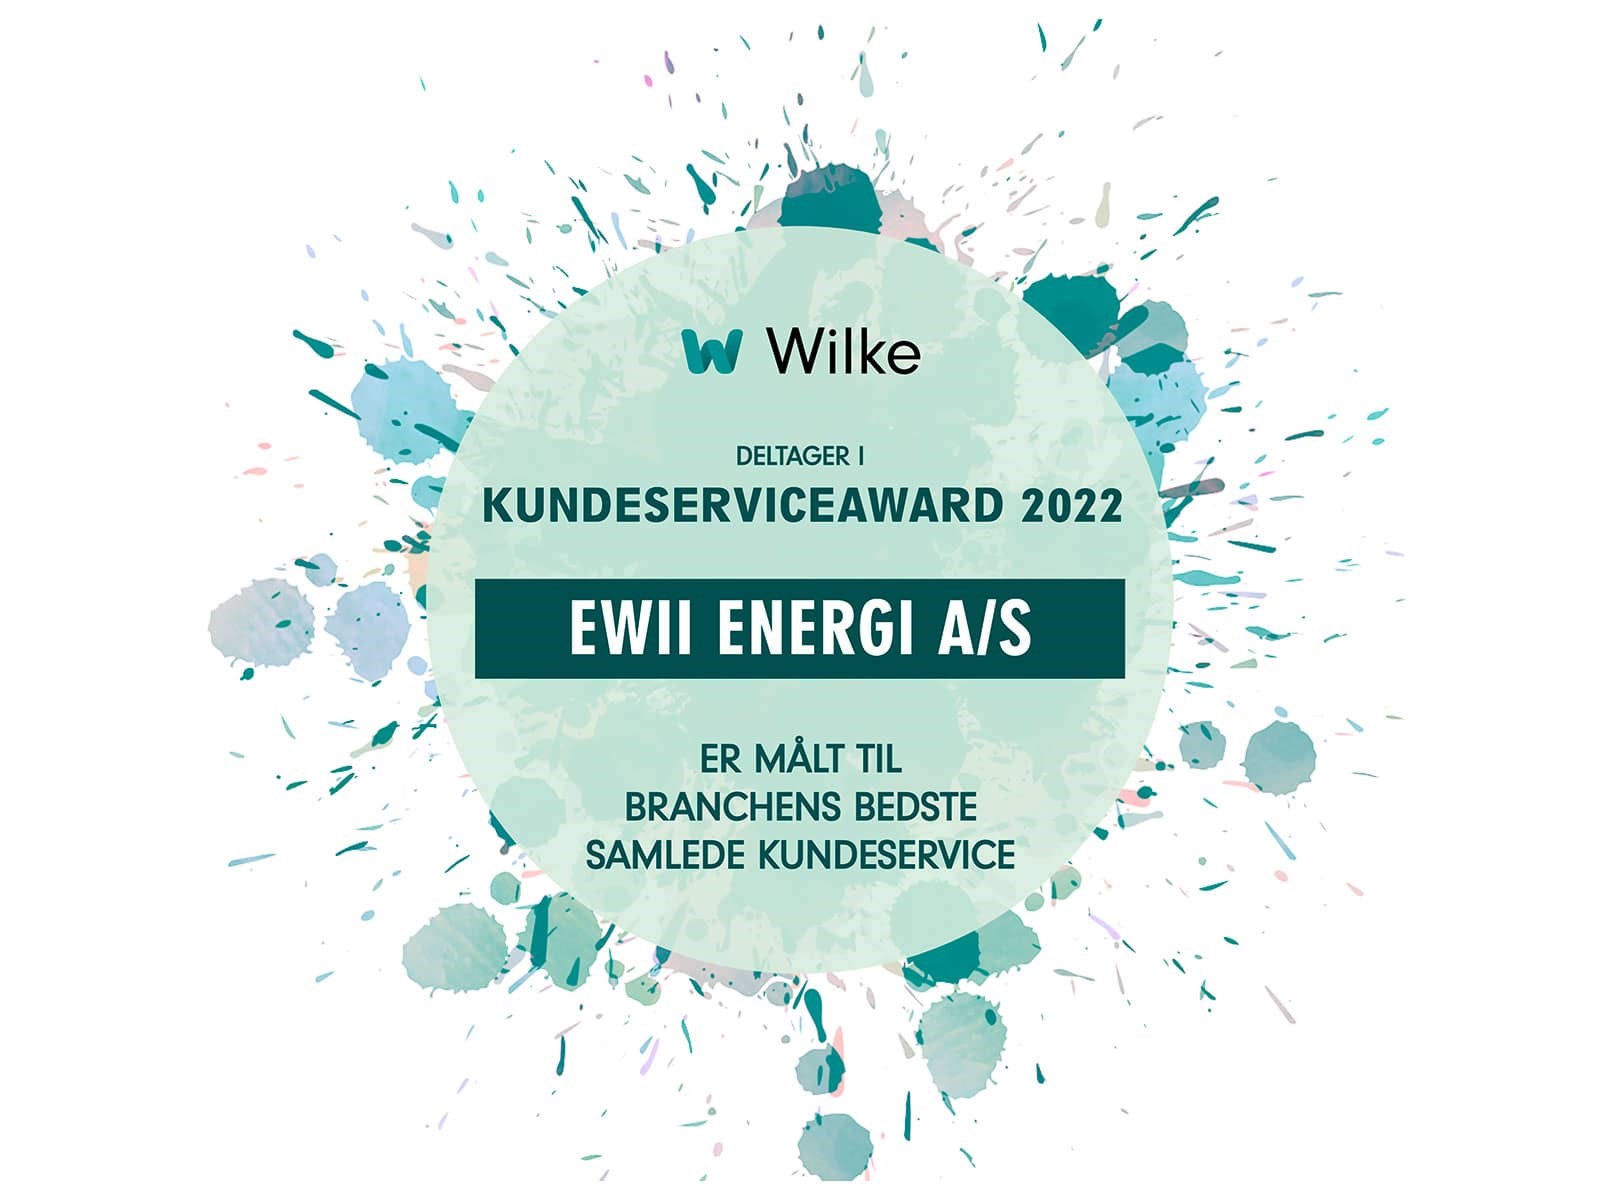 EWII har deltaget i Kundeserviceawards 2022, og er blevet målt til at have forsyningsbranchens bedste digitale og interne serviceorganisation